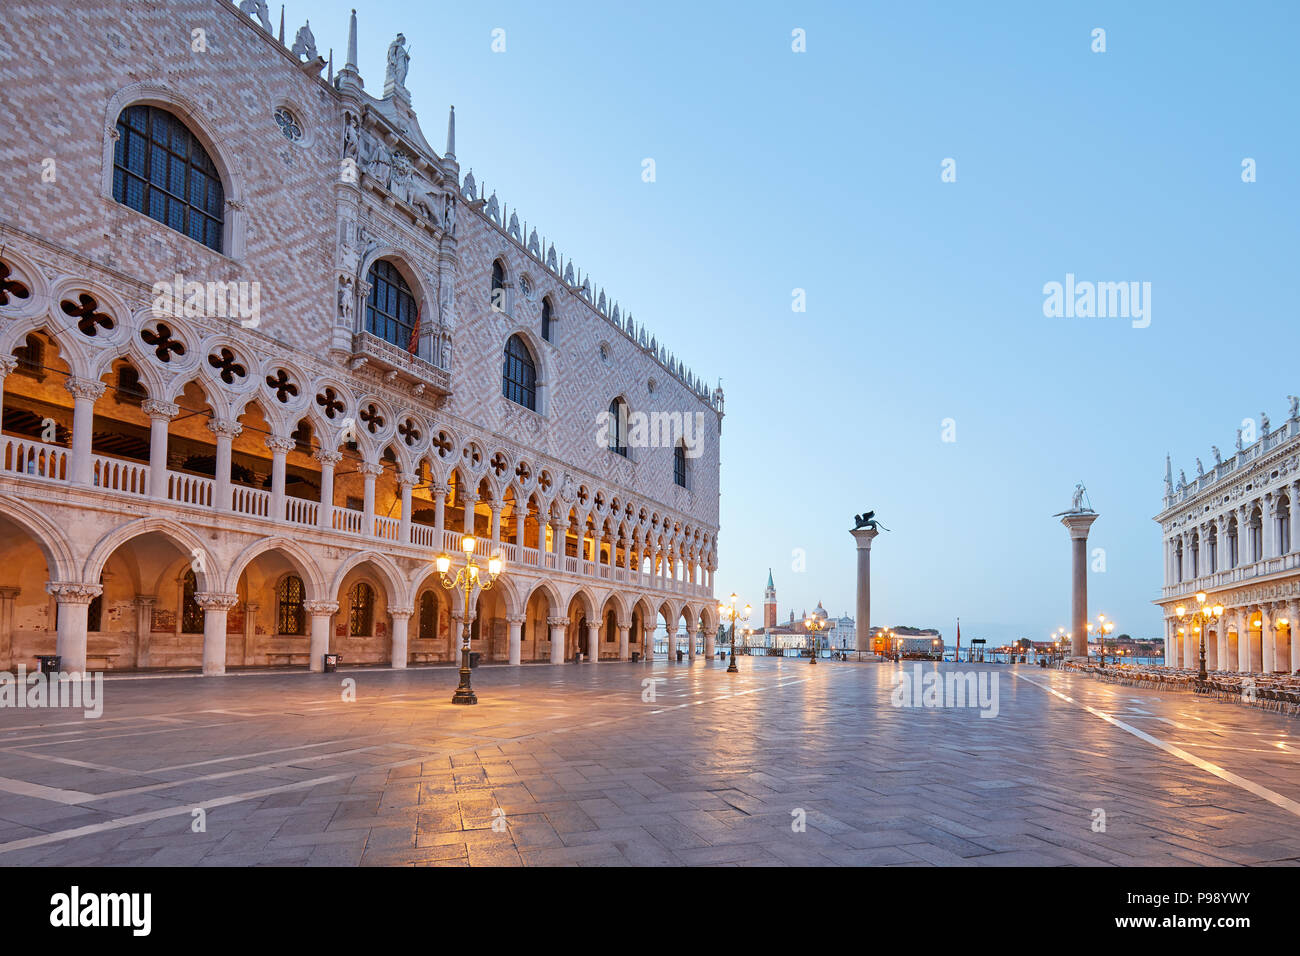 La plaza de San Marcos vacíos, ángulo de visión amplio, temprano en la mañana en Venecia, Italia Foto de stock